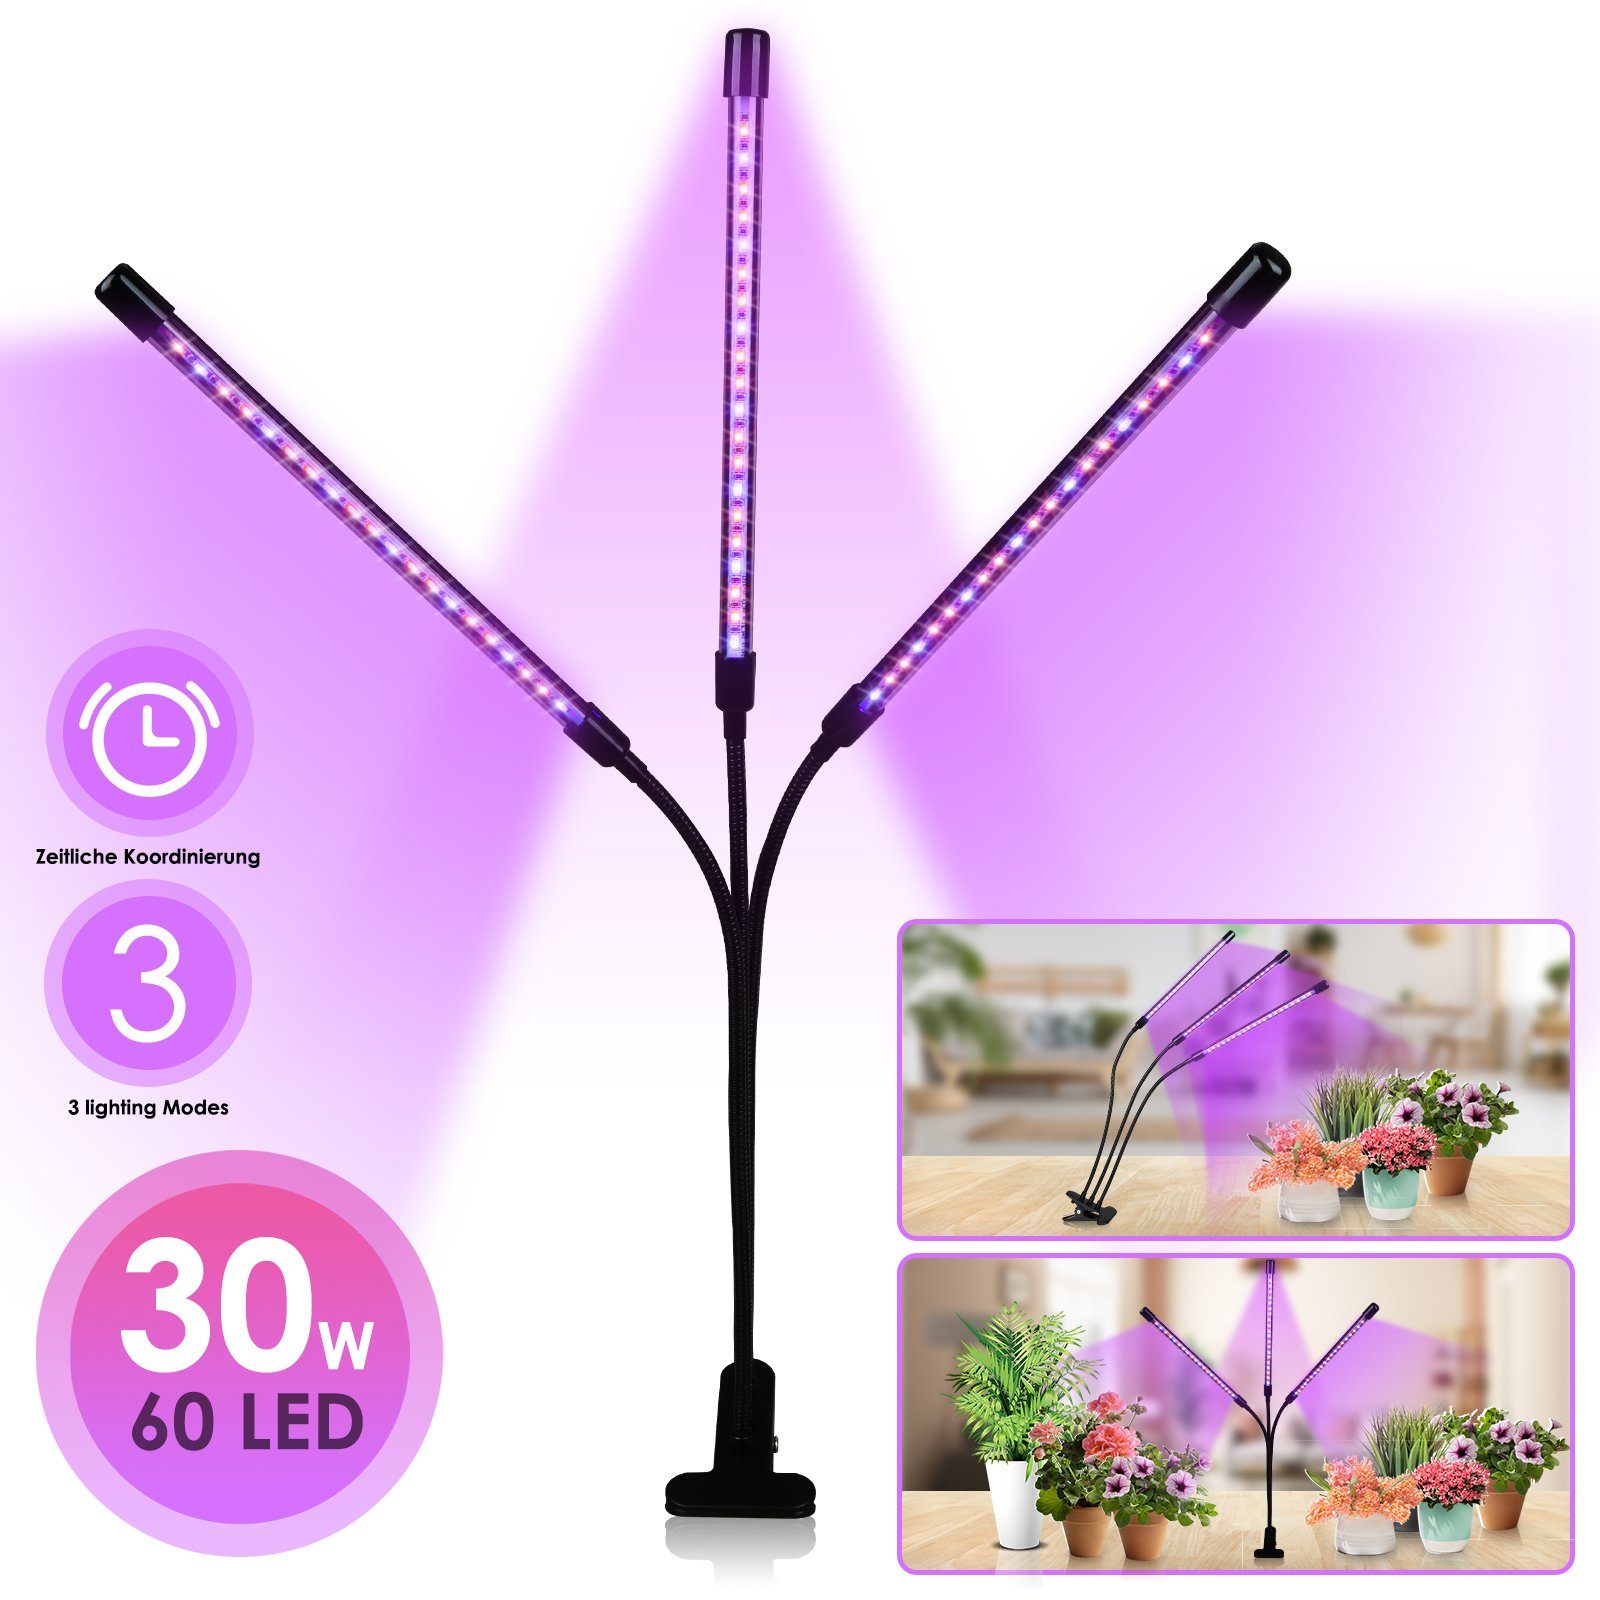 Licht Helligkeitsstufen 10 mit Grow Wachstumslampe, Light LED 3 Lospitch Modus, Köpfe Pflanzenlicht Vollspektrum 3 Pflanzenlampe Dimmbar 30W